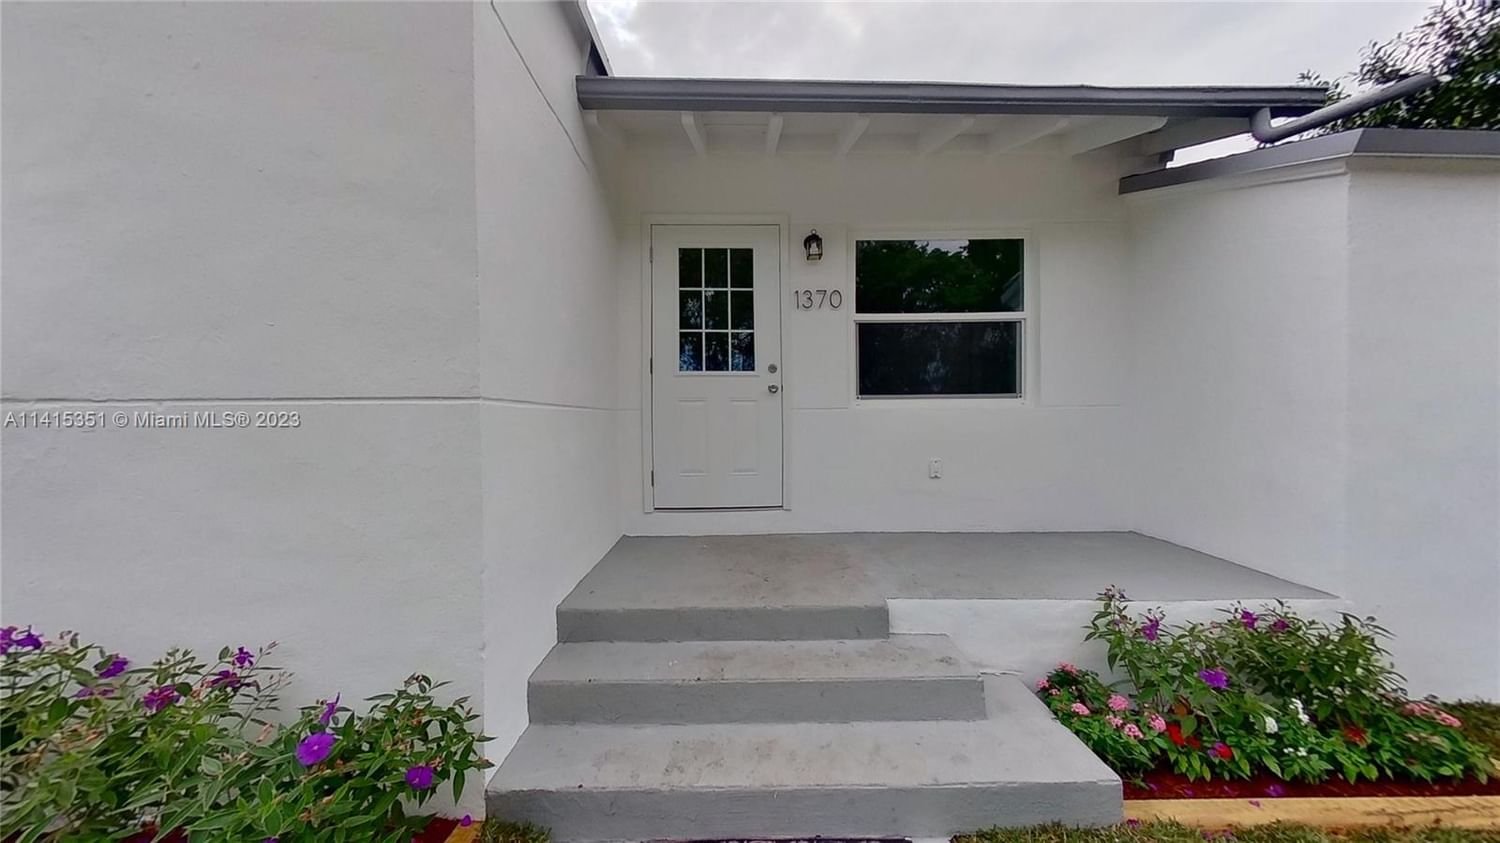 Real estate property located at 1370 39th St, Miami-Dade County, N MIAMI ESTATES, Miami, FL